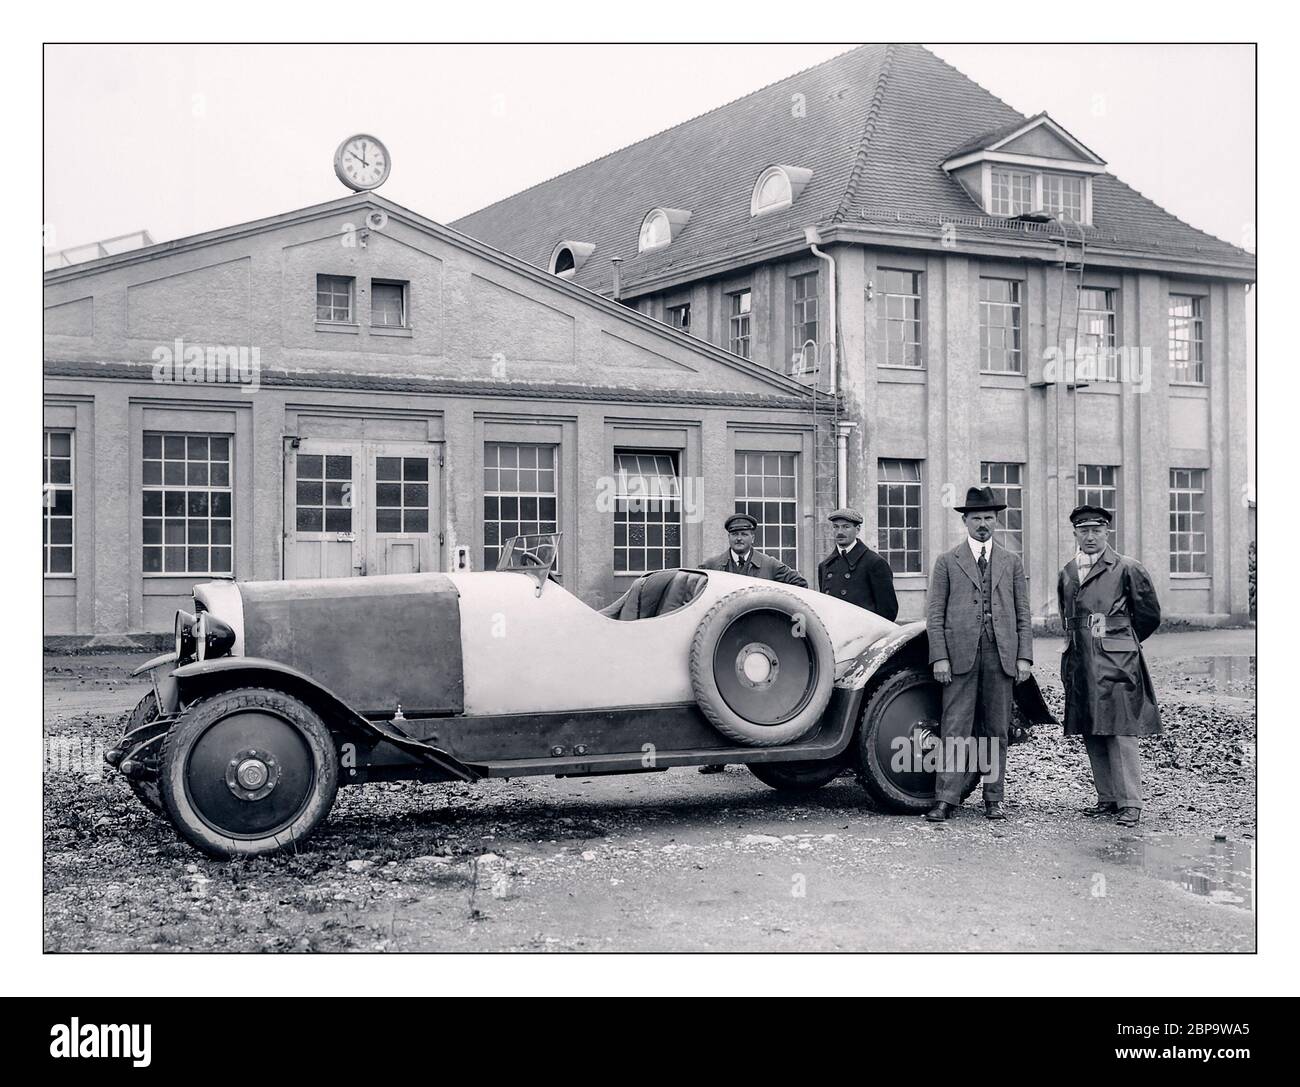 1921 Maybach 22/70 HP W3 , Karl Maybach nouvelle marque de voitures était prêt à dévoiler sa première voiture de production au salon de l'automobile de Berlin en septembre 1921 – le Maybach W 3. Le véhicule de cinq mètres de long qui a atteint des vitesses allant jusqu'à 110 km/h a été propulsé par le moteur six cylindres W 2 en ligne de 70 ch (52 kW). Les caractéristiques innovantes de la W 3 comprenaient un système de freinage aux quatre roues avec compensation de puissance de freinage mécanique et une boîte à deux vitesses sans changement de vitesse. Les rapports ont été changés en appuyant sur un levier de démarrage au pied. Banque D'Images